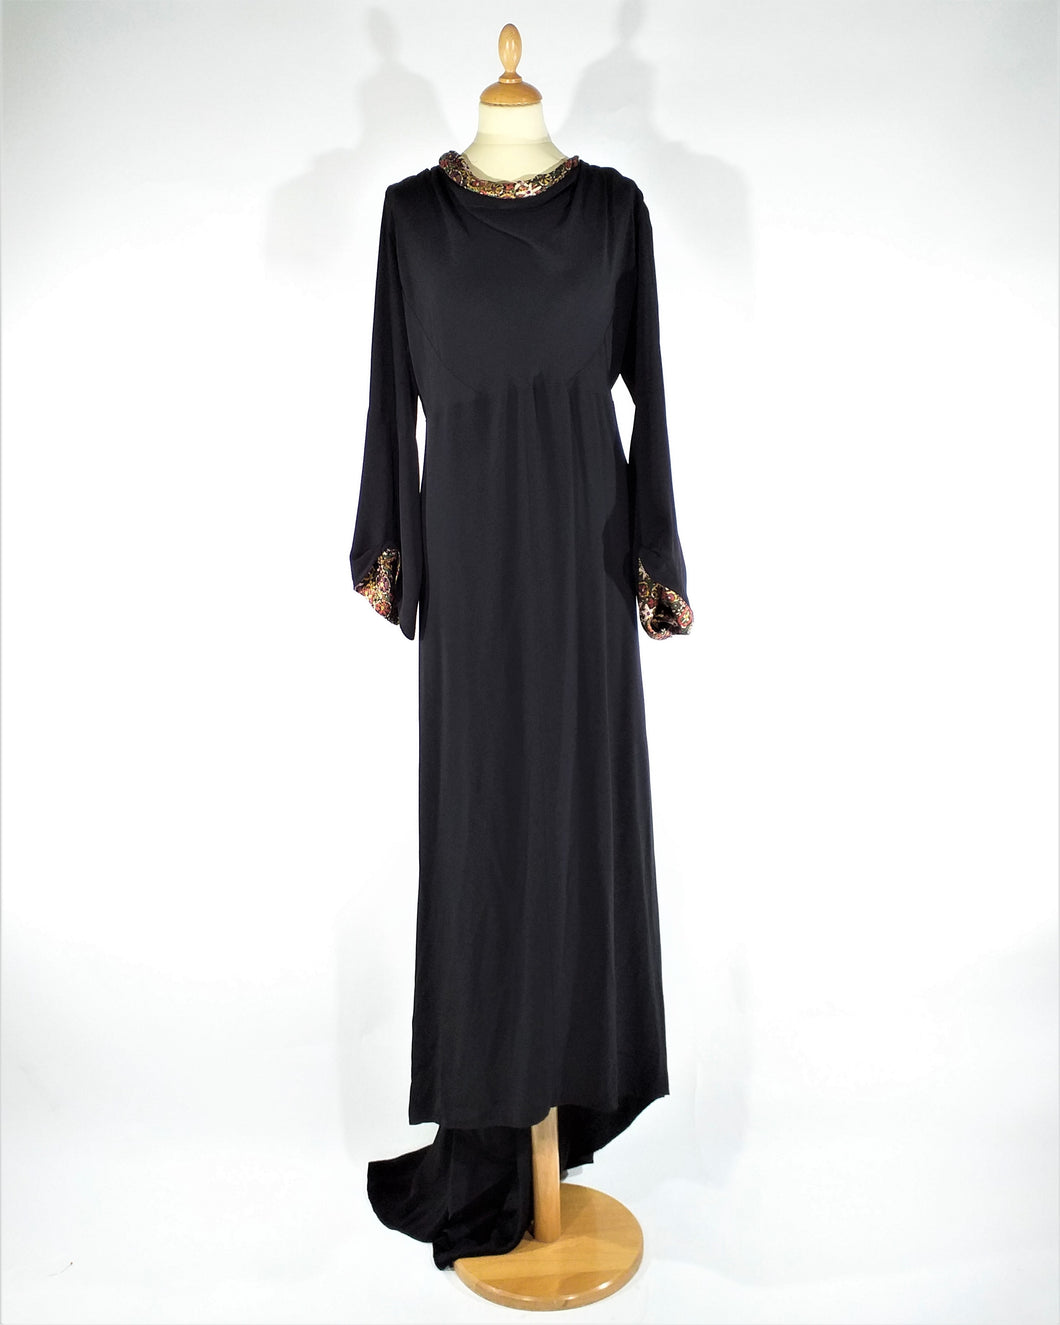 Magnifique robe de soirée en crêpe noir '1930 magnificent evening dress of black crêpe